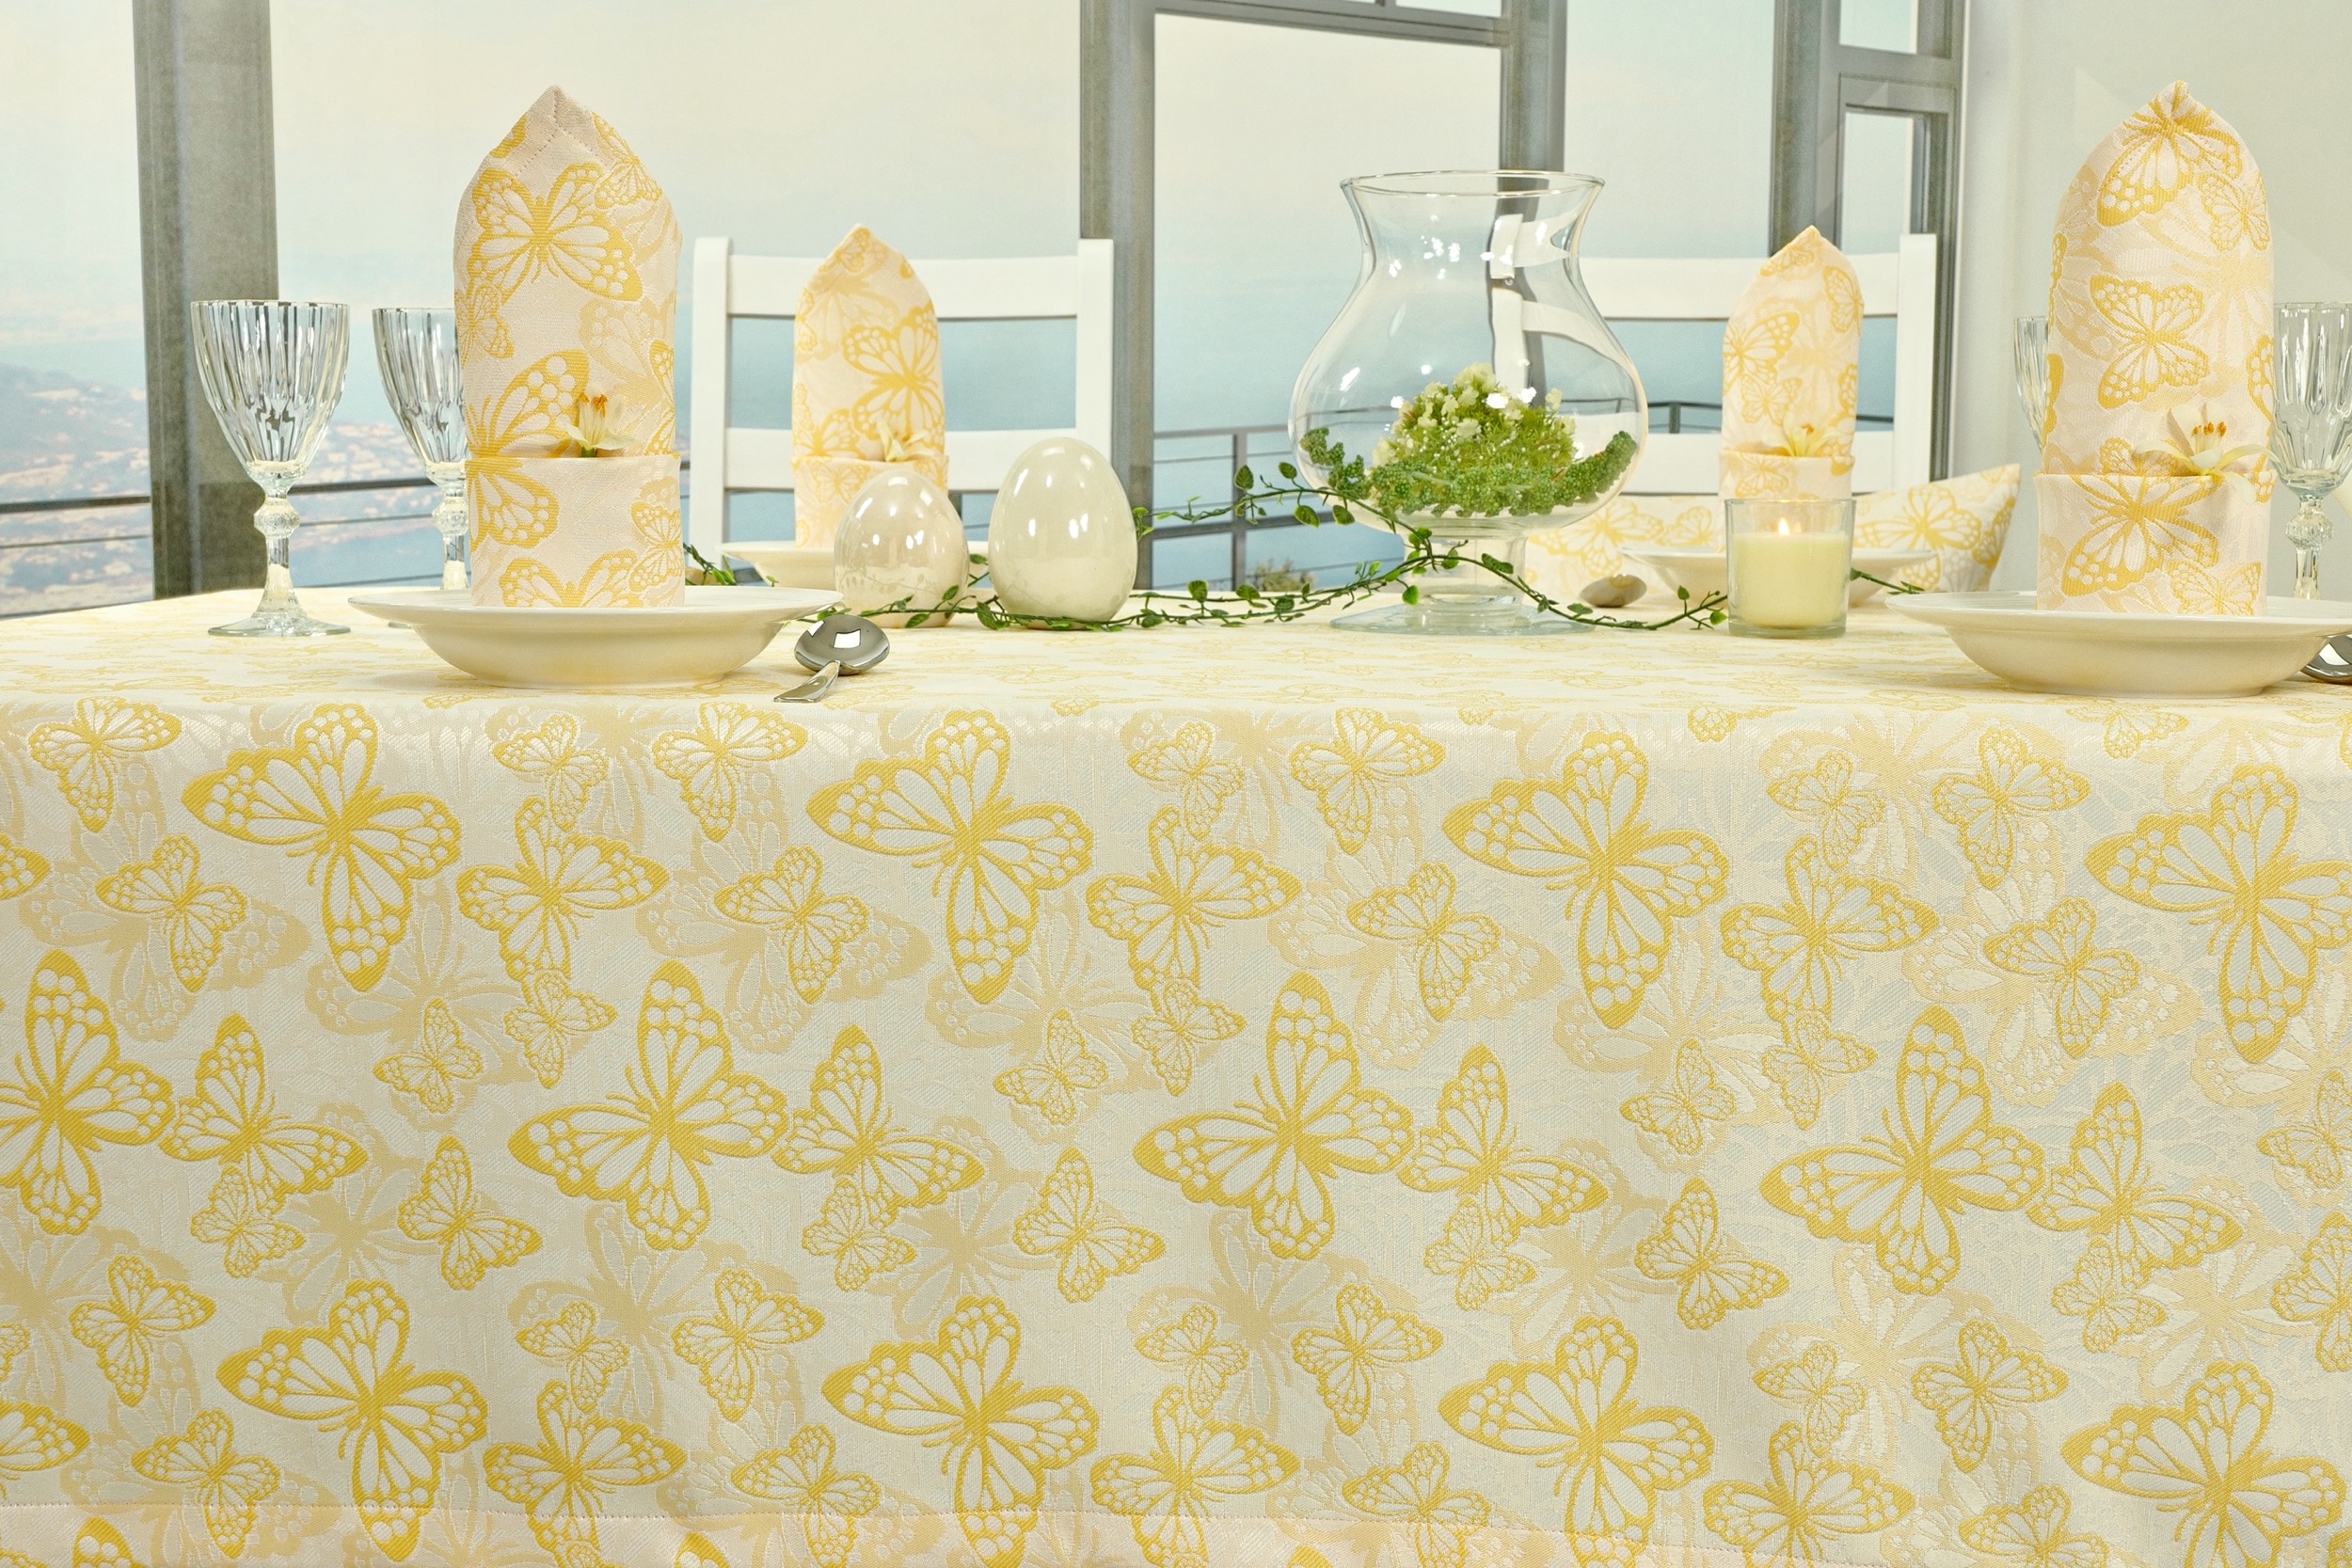 Fleckgeschützte Tischdecke Weiß Gelb Muster Springtime Breite 140 cm